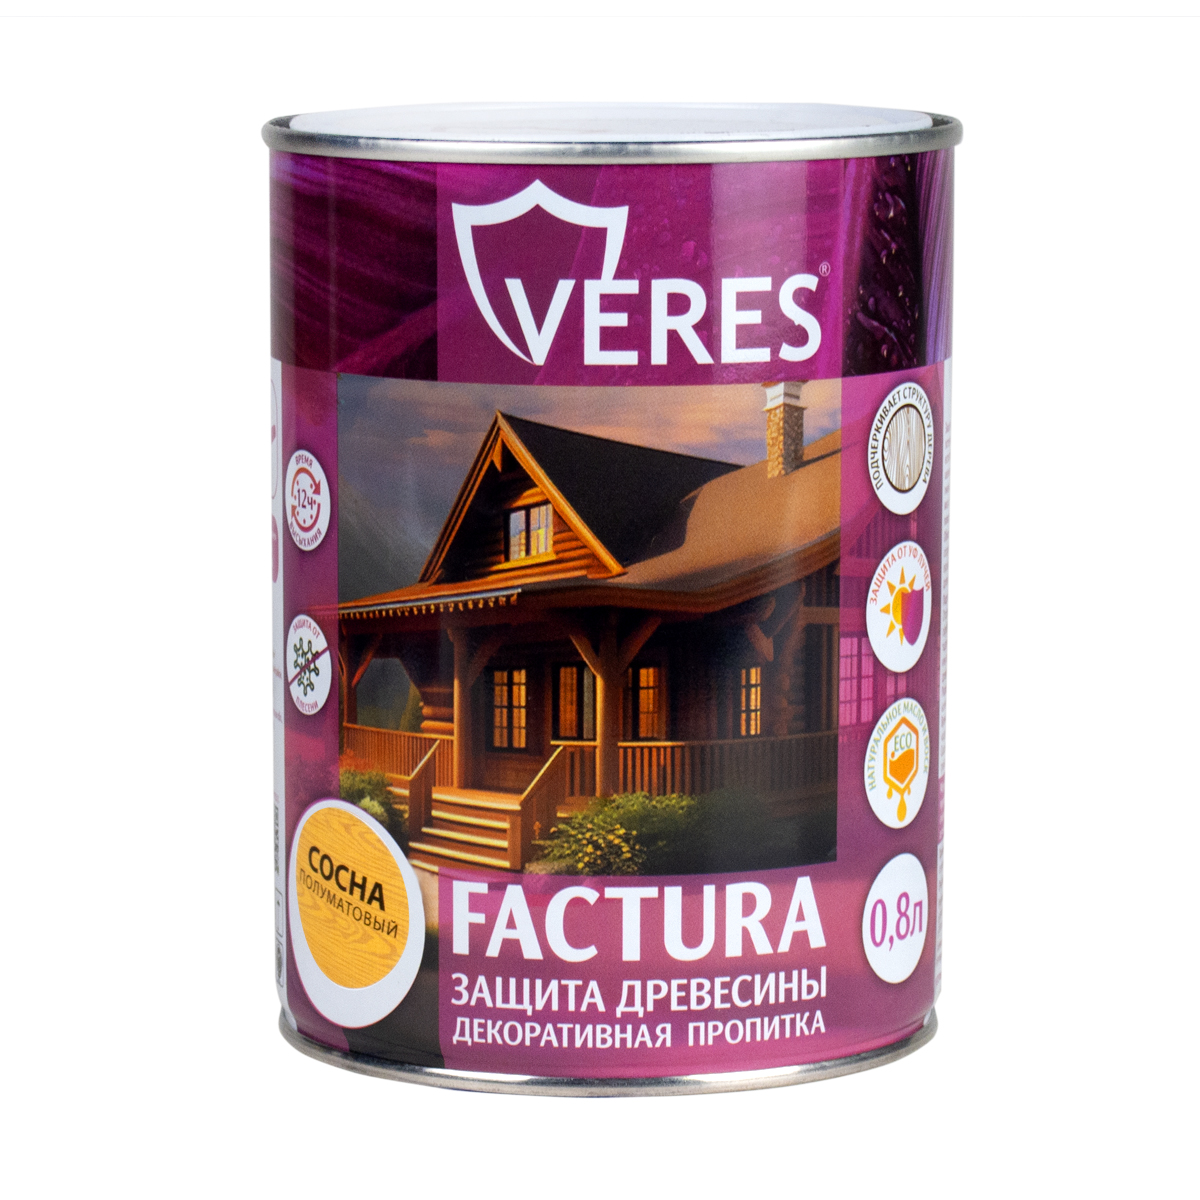 Декоративная пропитка для дерева Veres Factura полуматовая 0 8 л сосна, VR-074